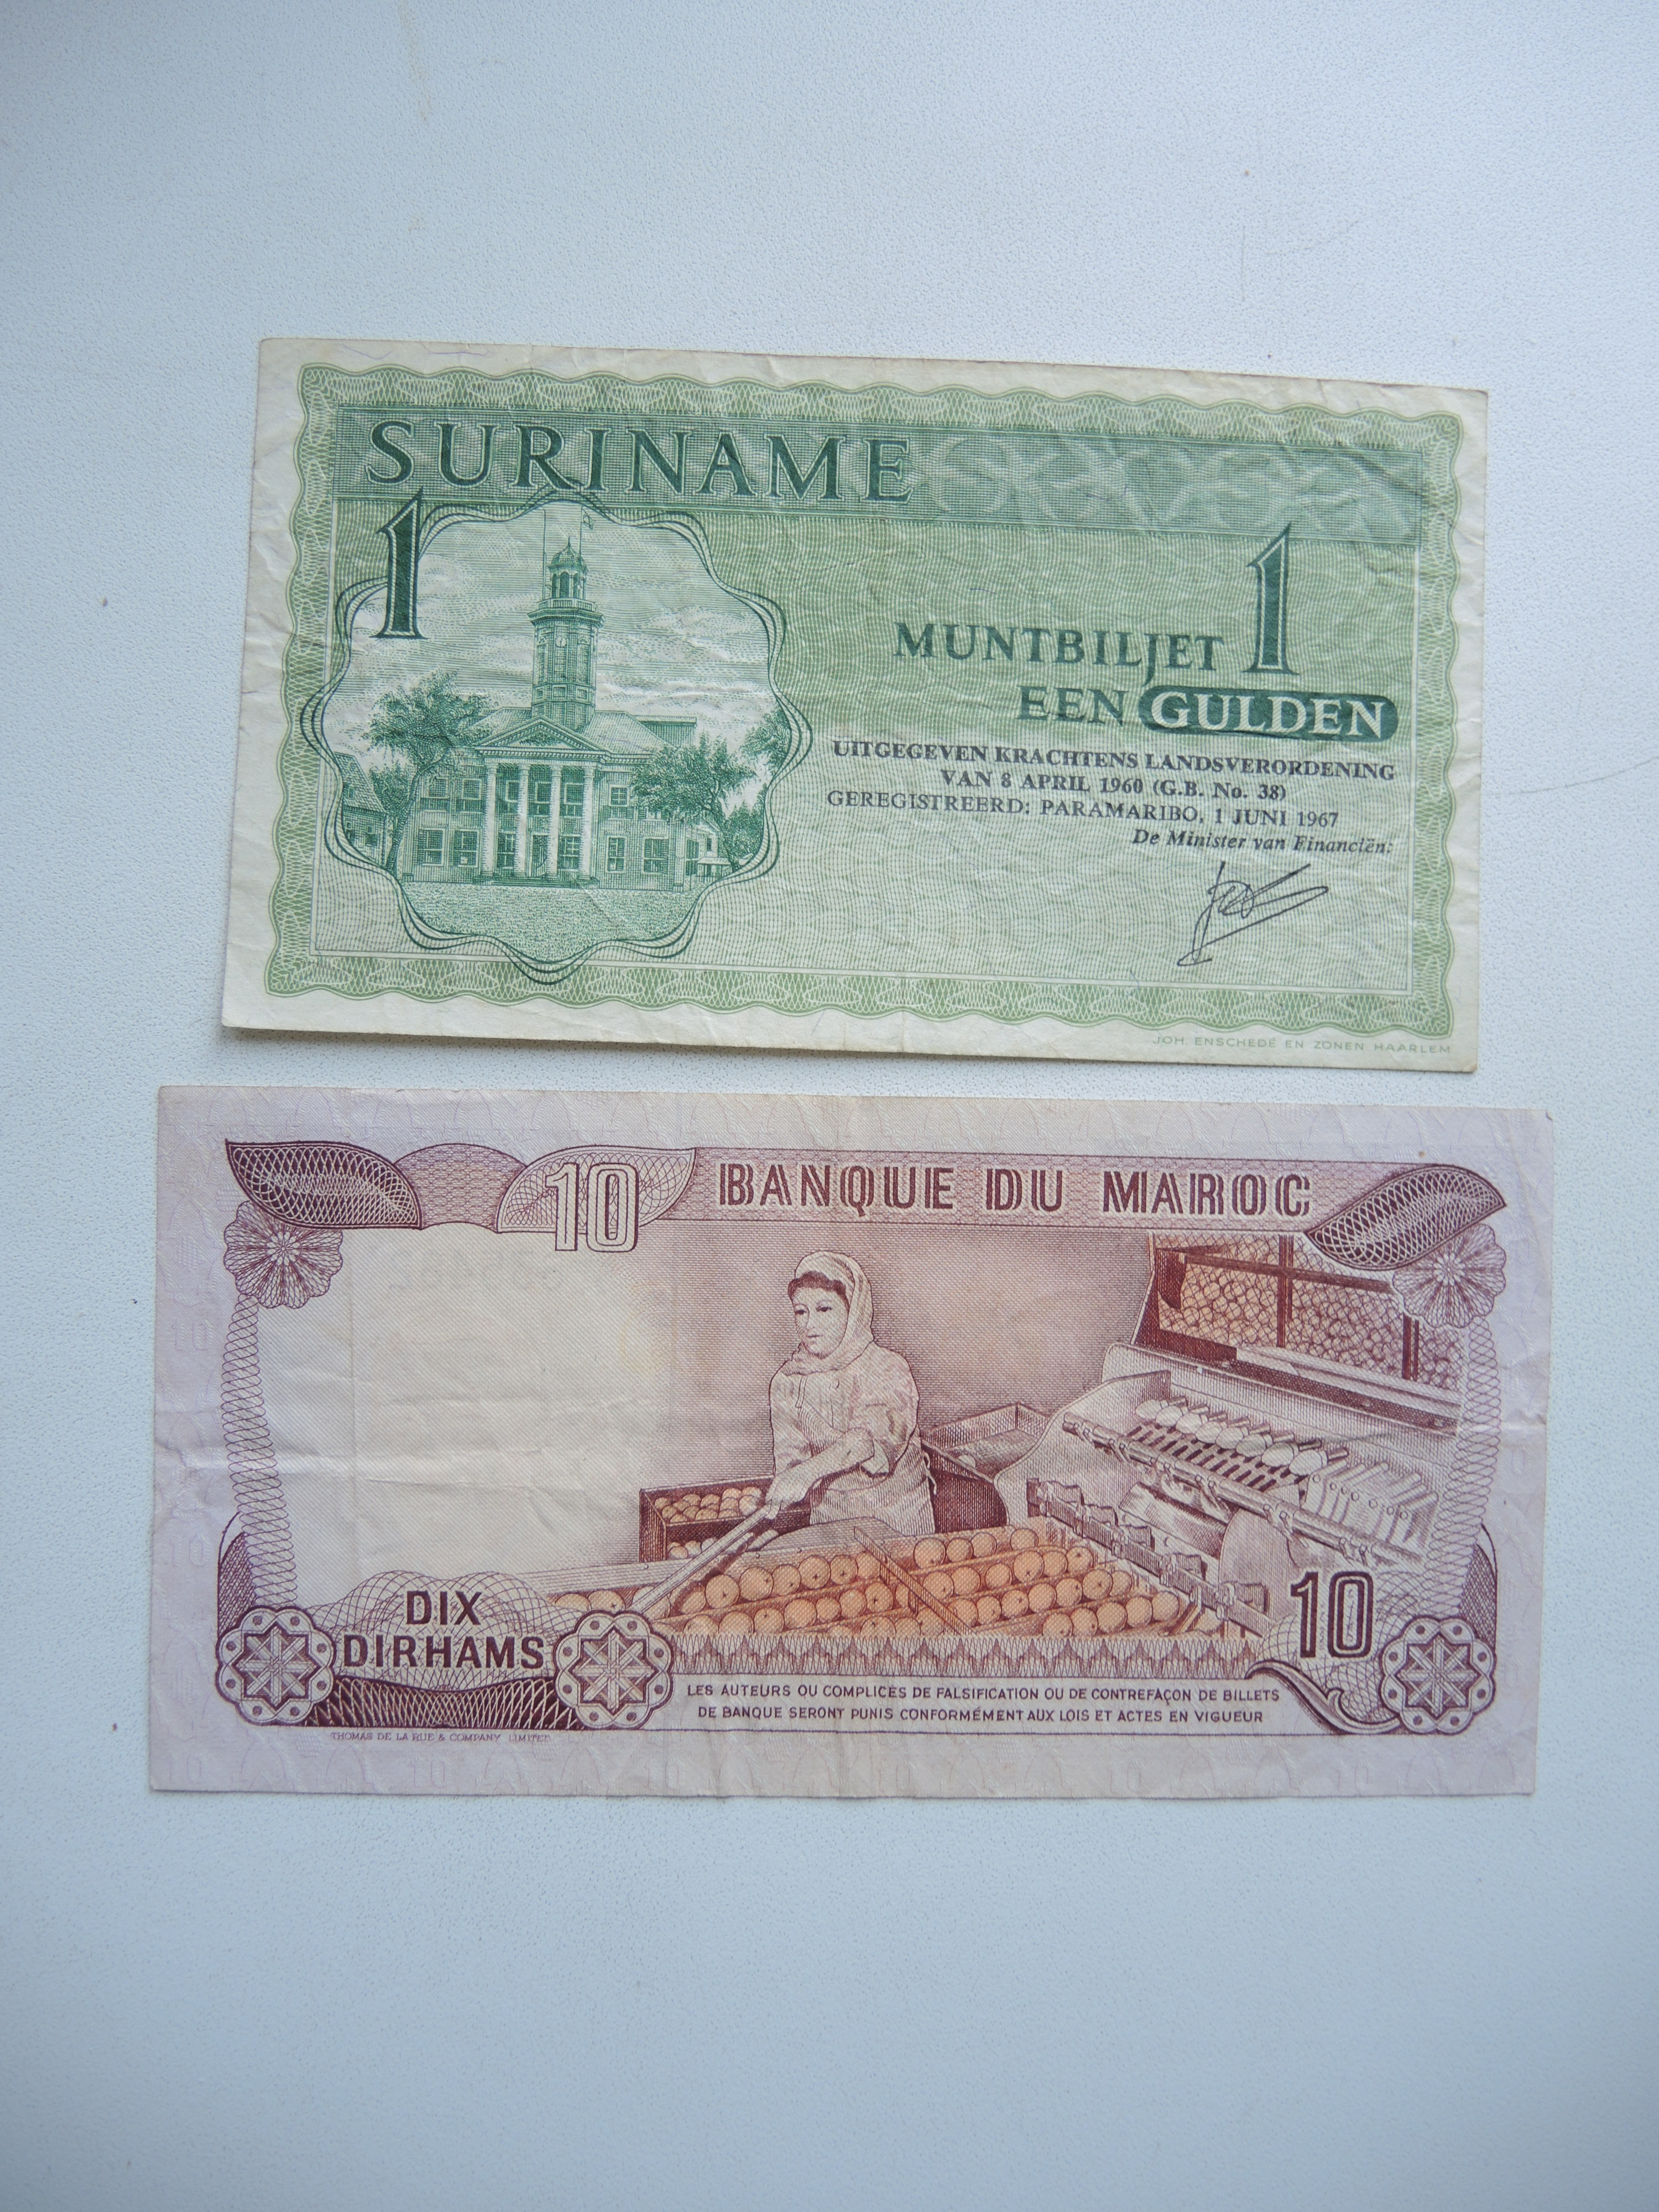 2 боны банкноты 1 гульден Суринам 1967 г. Латинская Америка и 10 дирхам Марокко 1990 г. Африка